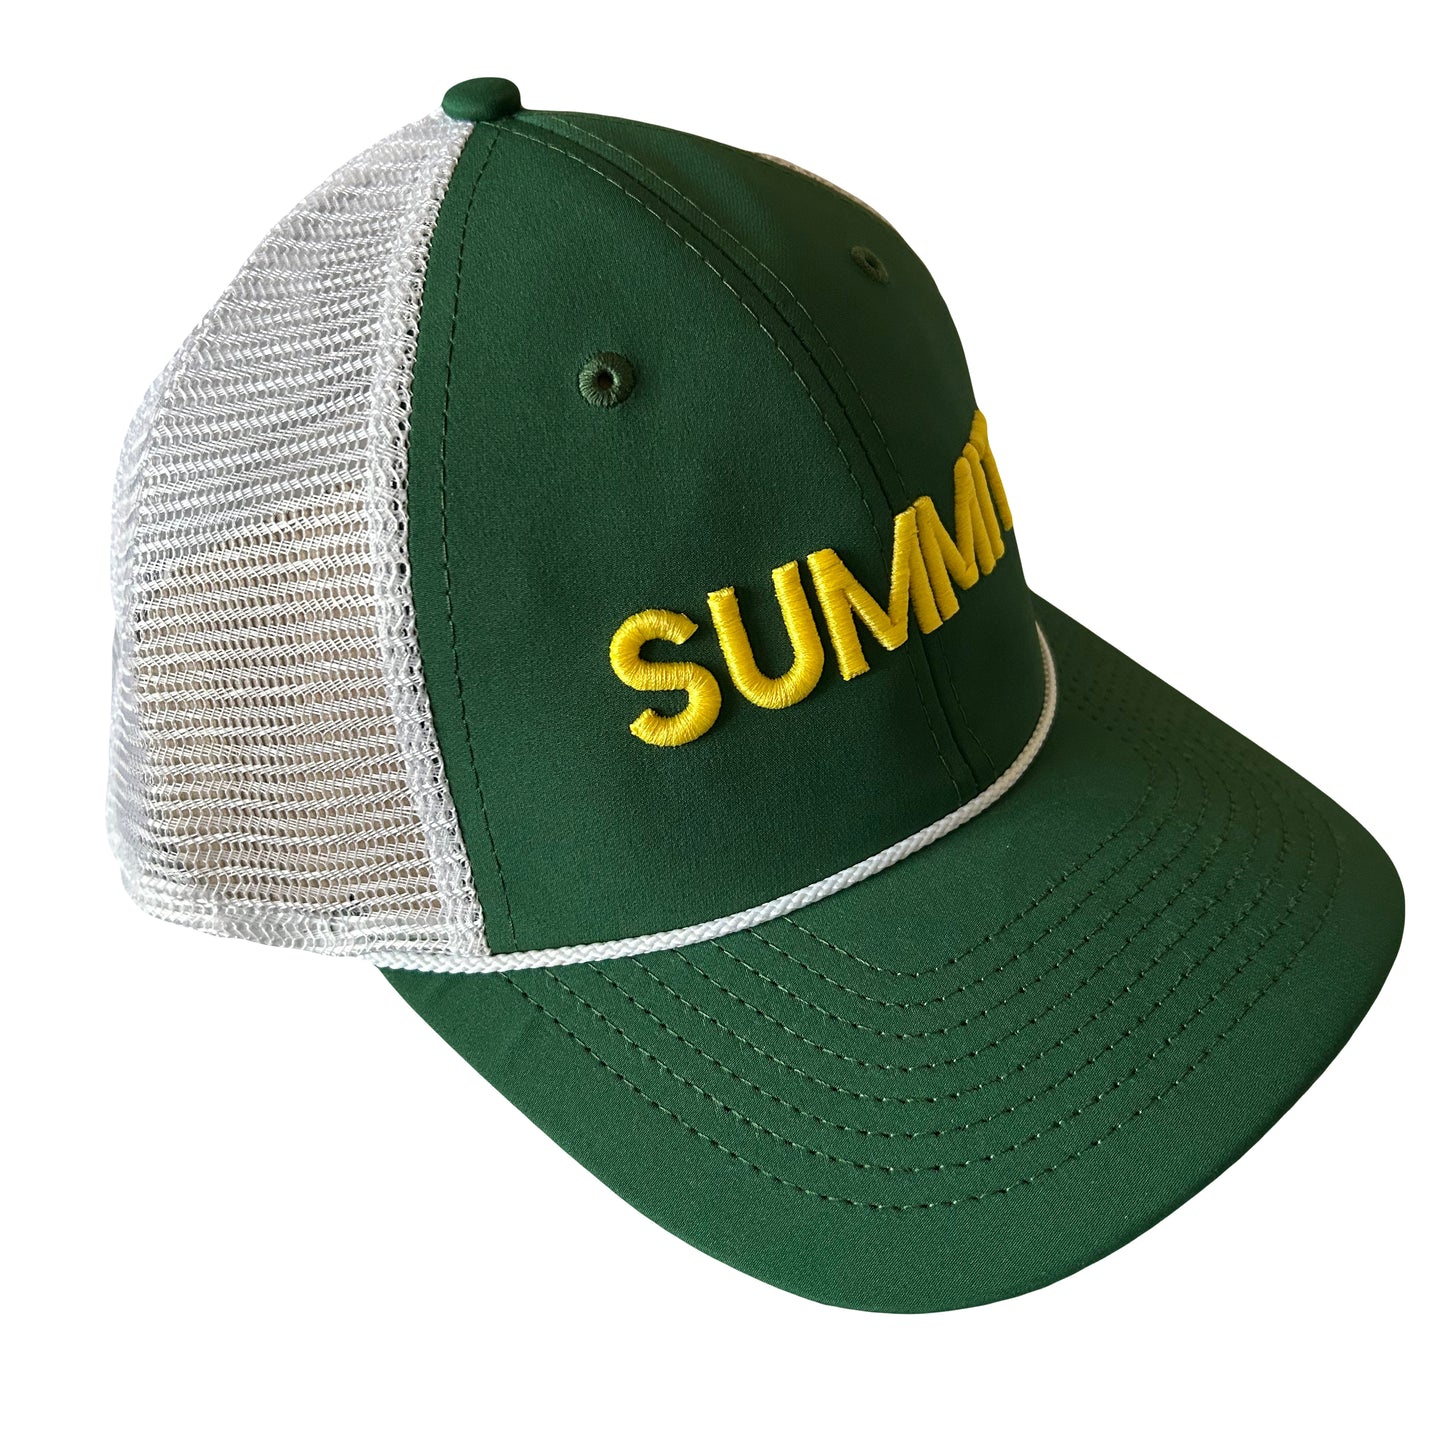 Summit Junior Tour Masters Hat